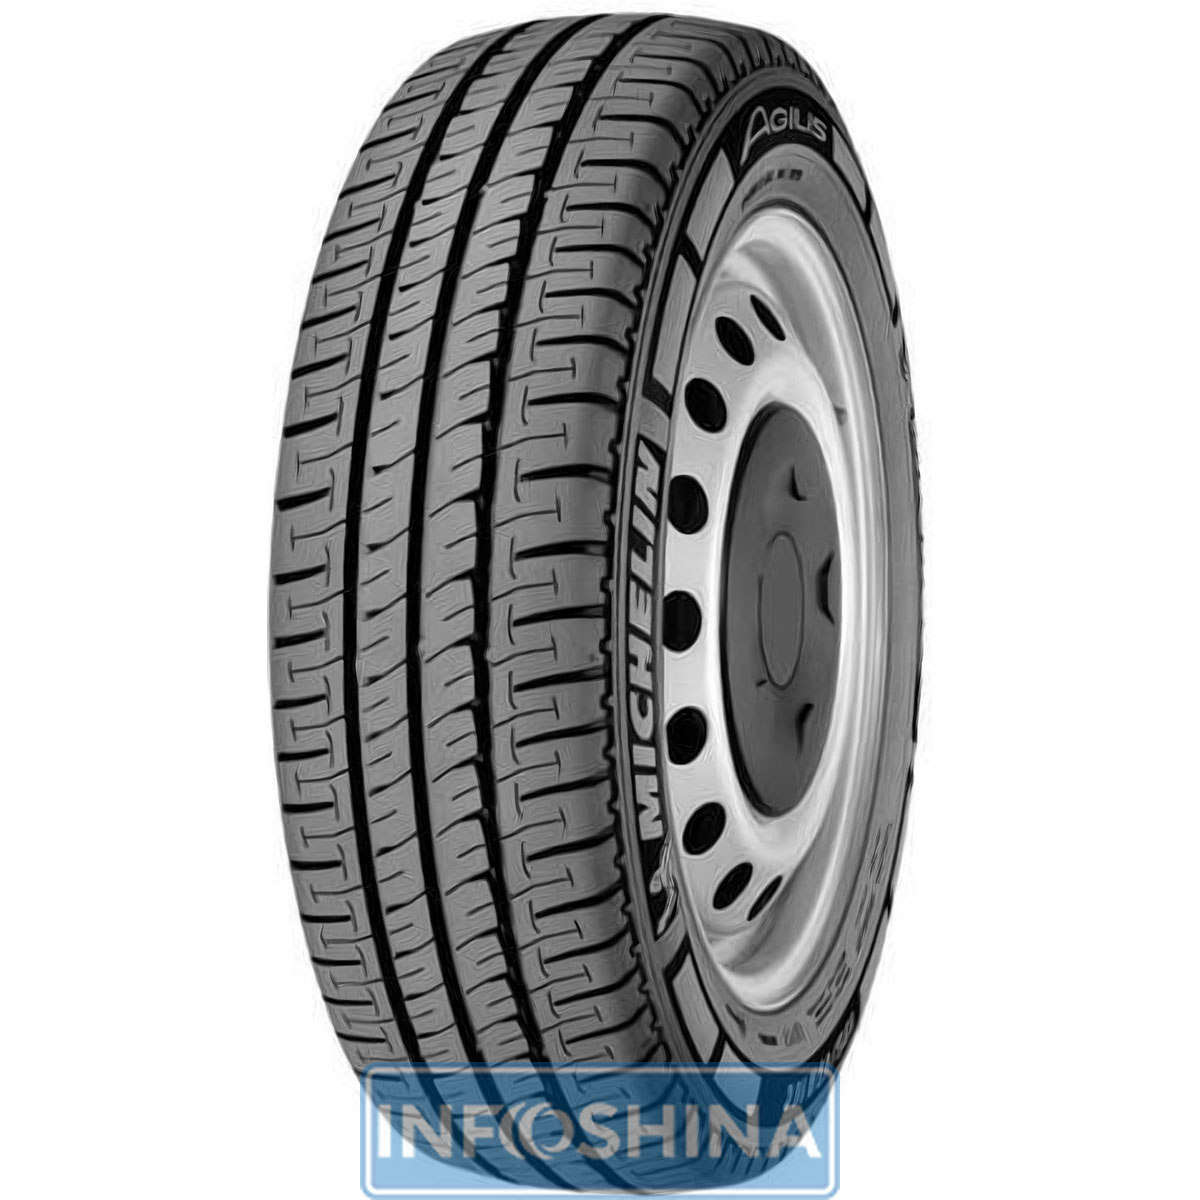 Купити шини Michelin Agilis 215/65 R16C 109/107T